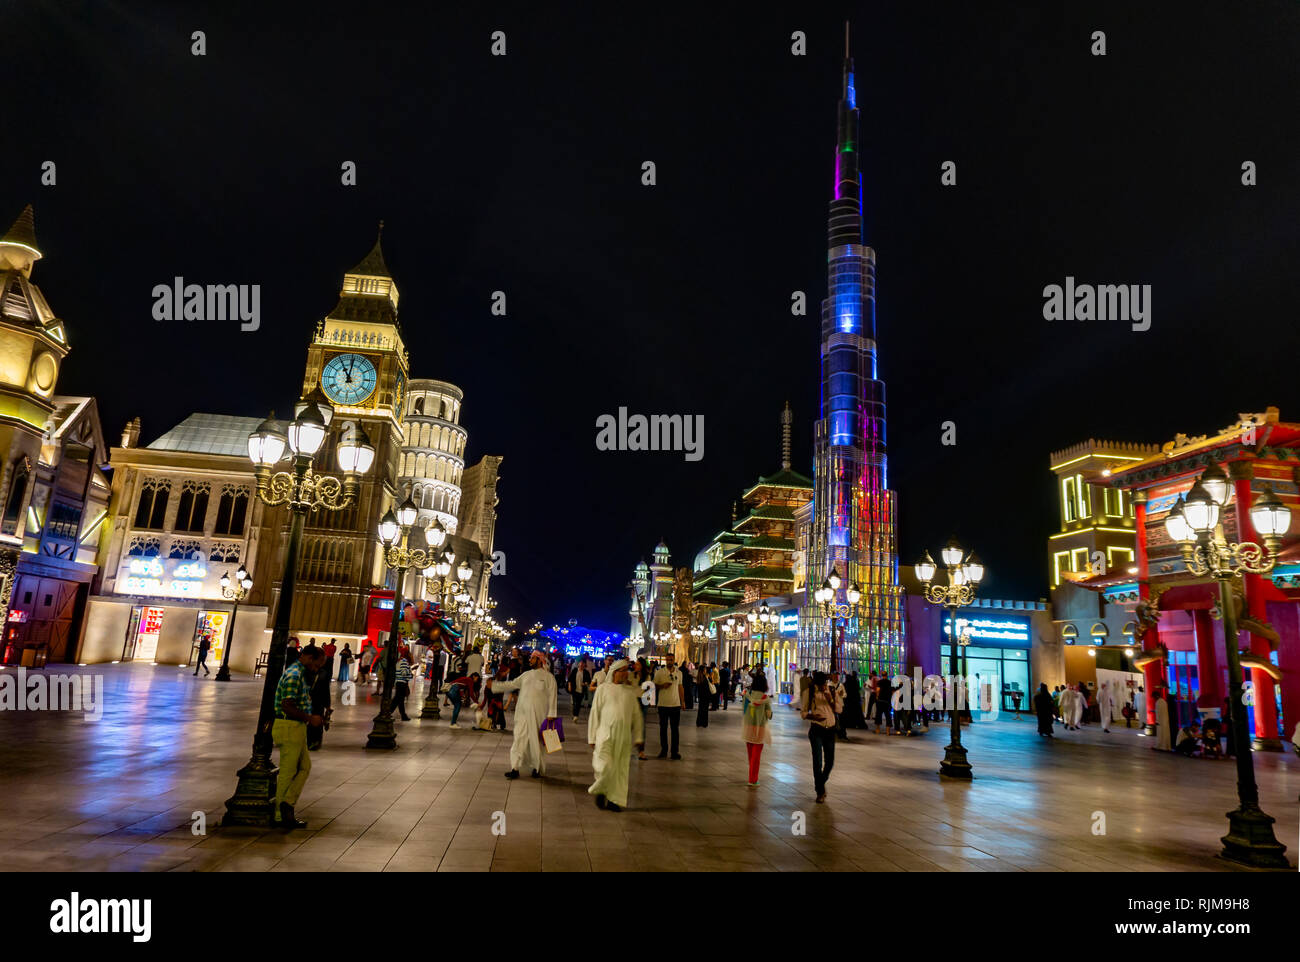 Dubai,UAE / 11. 06. 2018 : Global Village lumineux colorés avec foule Banque D'Images